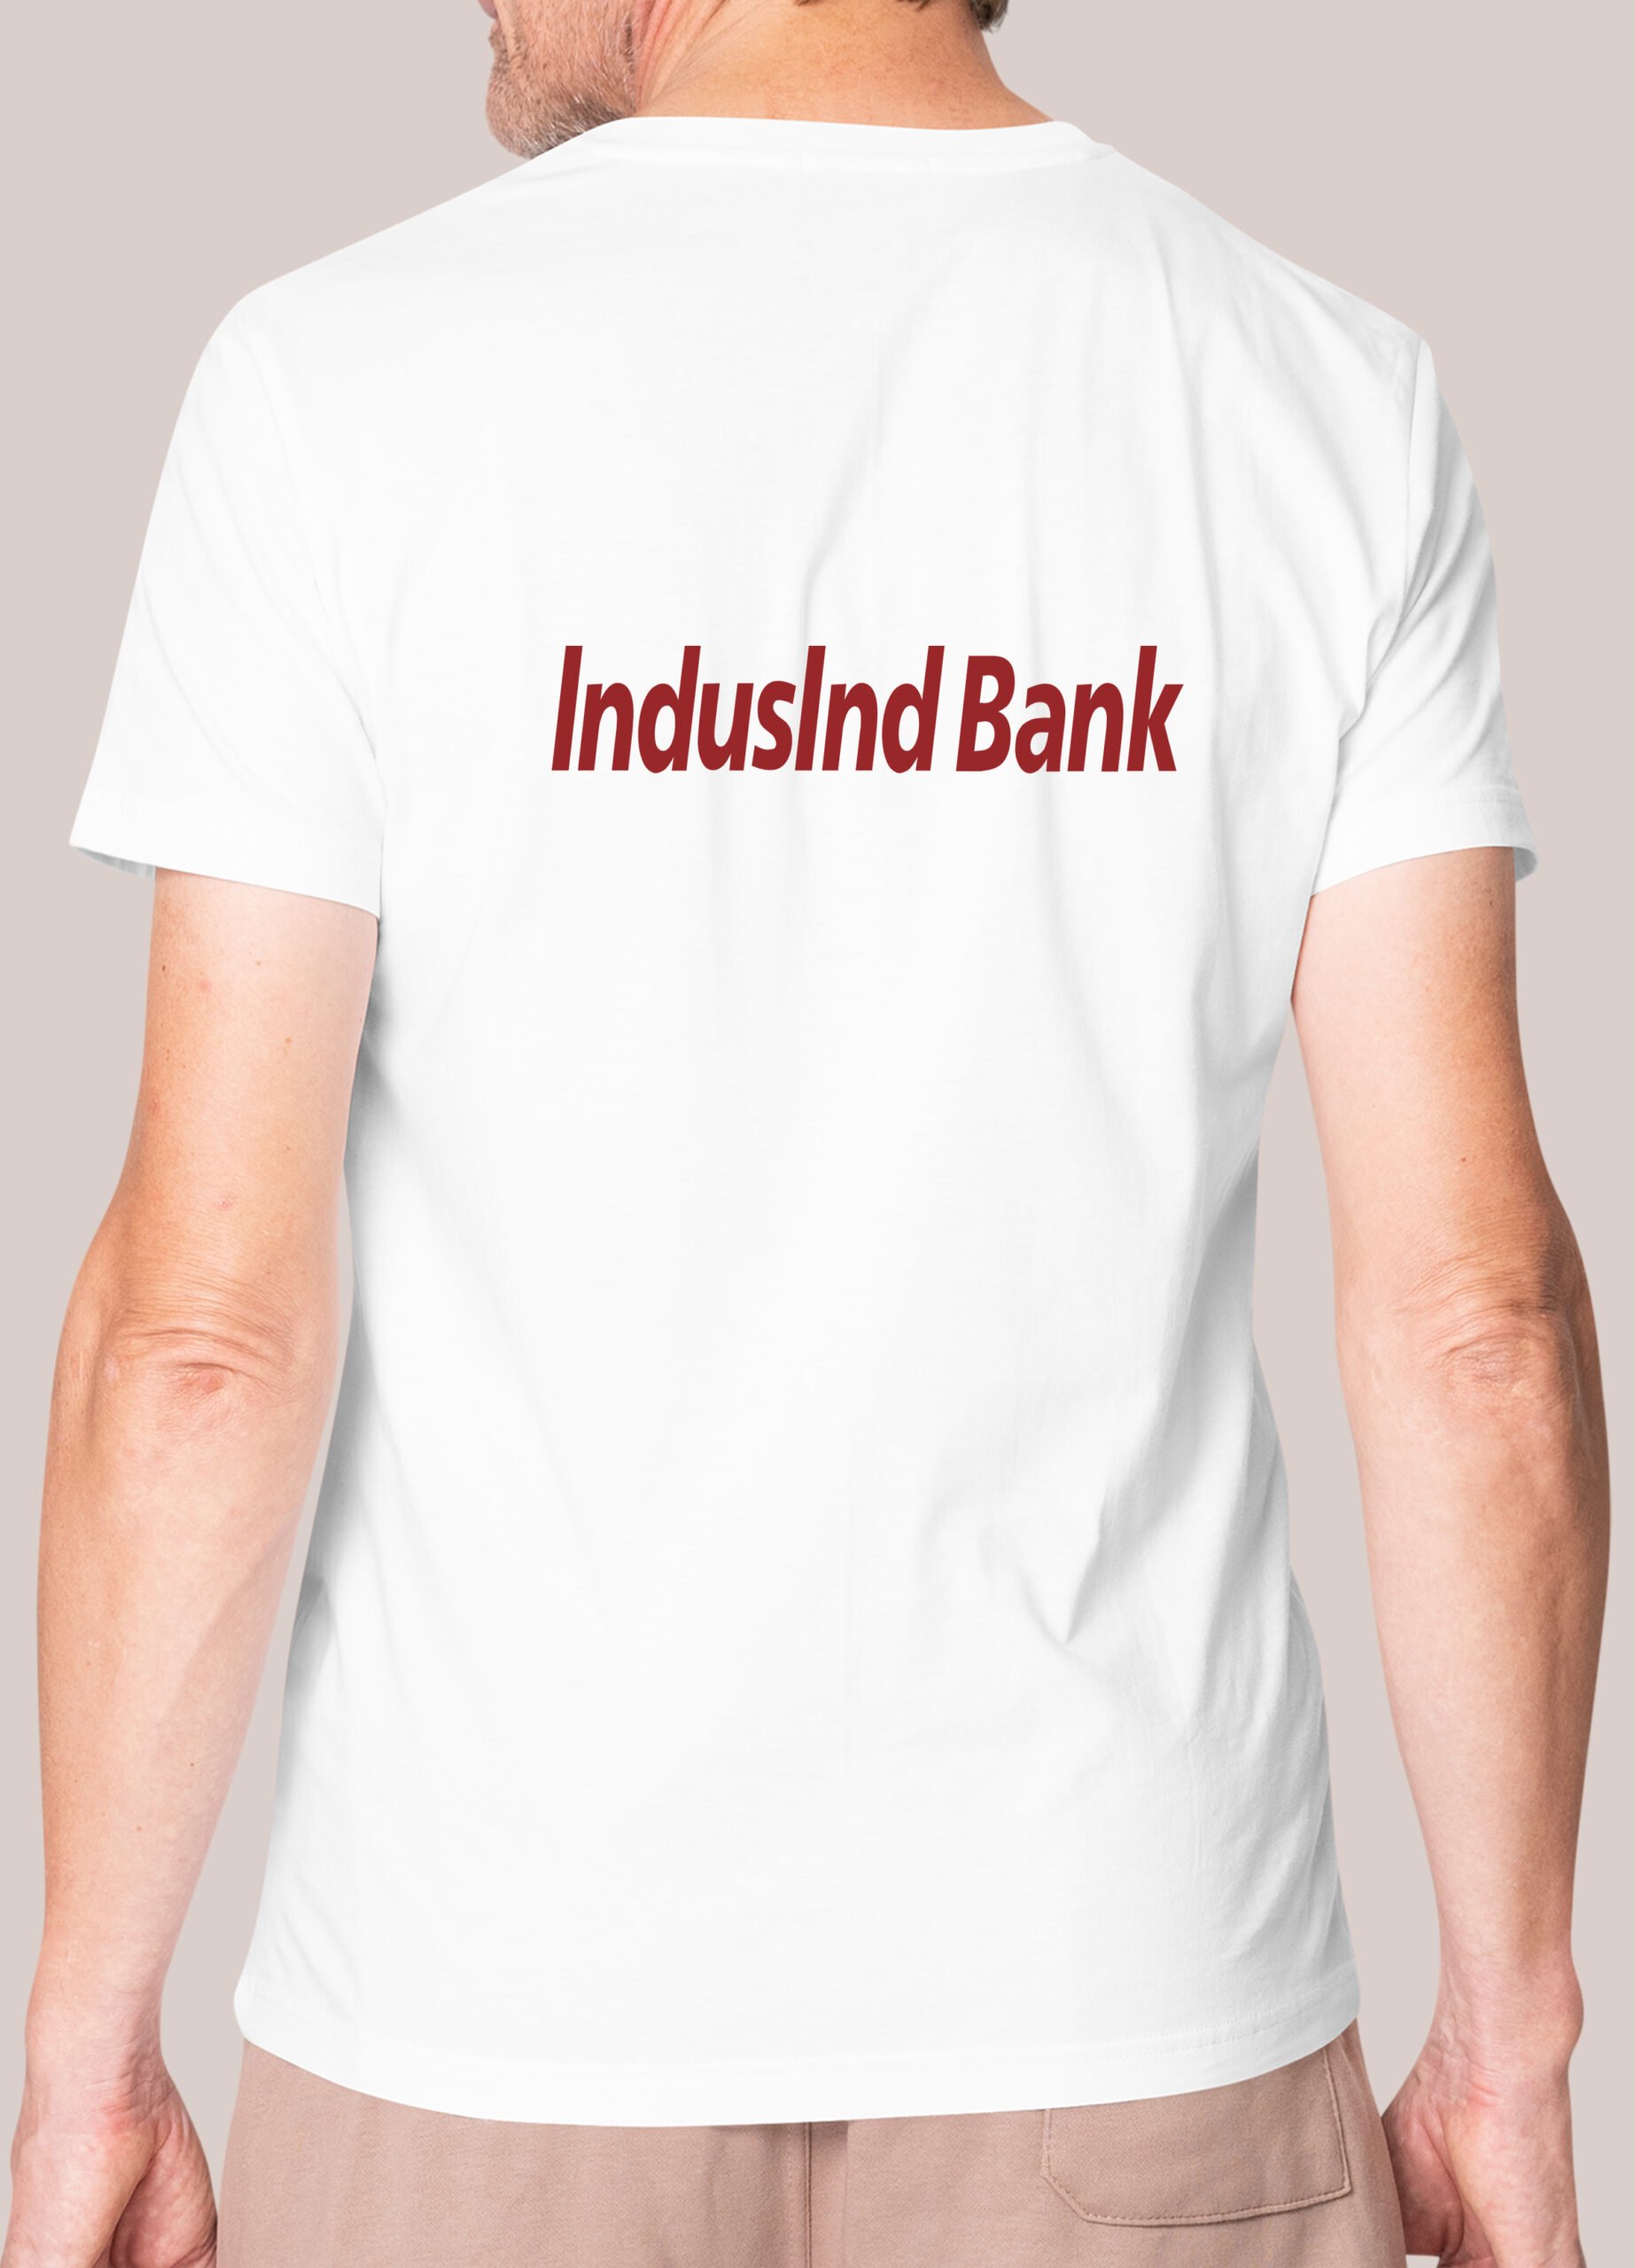 Indusind Bank Loan : व्यवसायासाठी,घरासाठी किंवा वैयक्तिक गरजेसाठी हि 5  कर्जे देते इंडसइंड बँक;पहा सविस्तर माहिती -